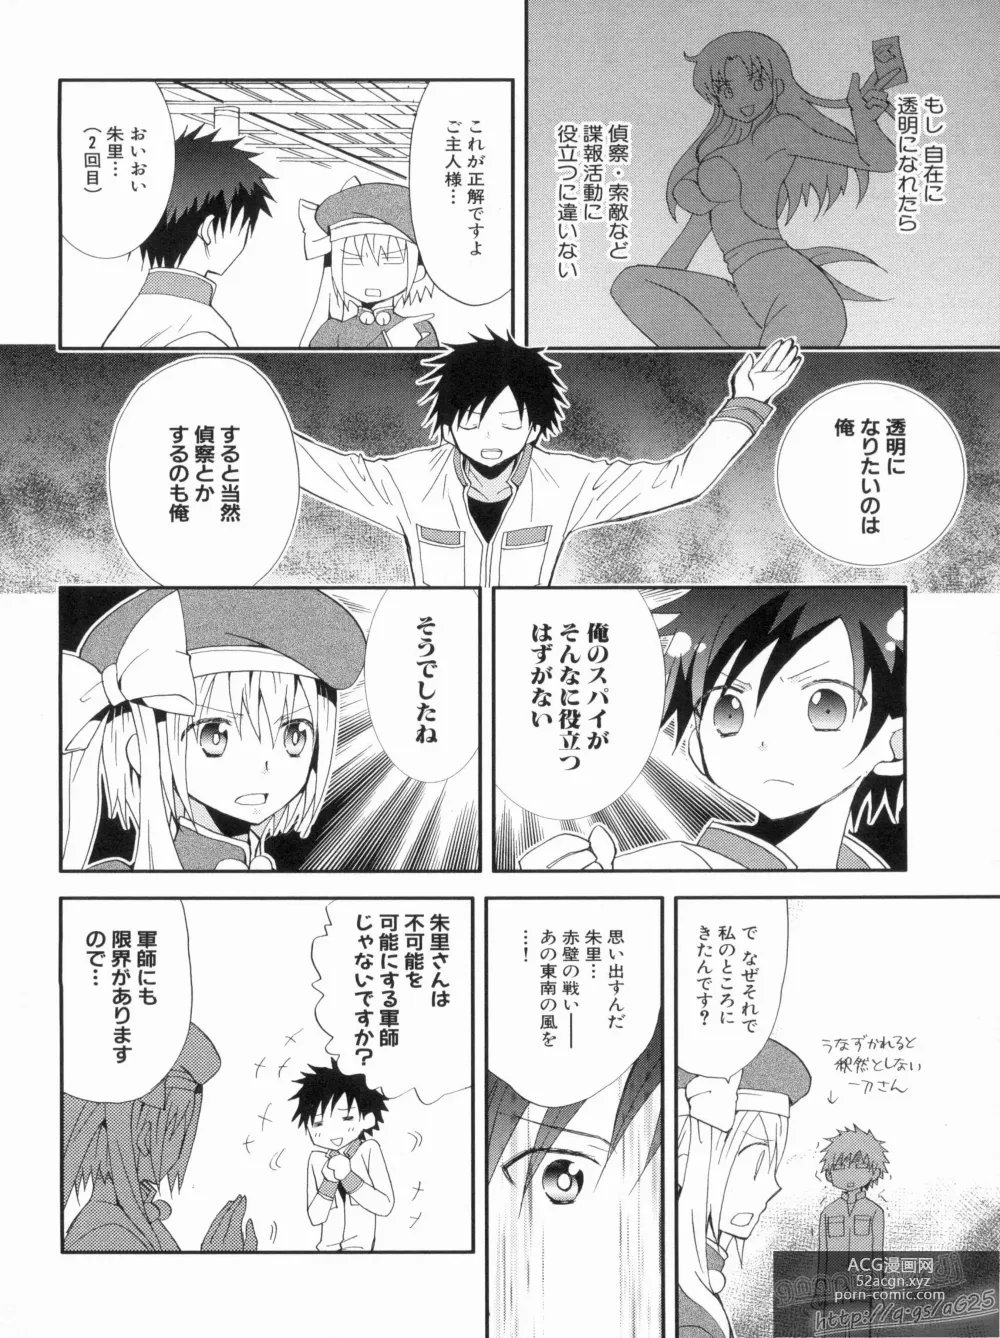 Page 152 of manga Shin Koihime Musou Gaishi Saiten VOL.2